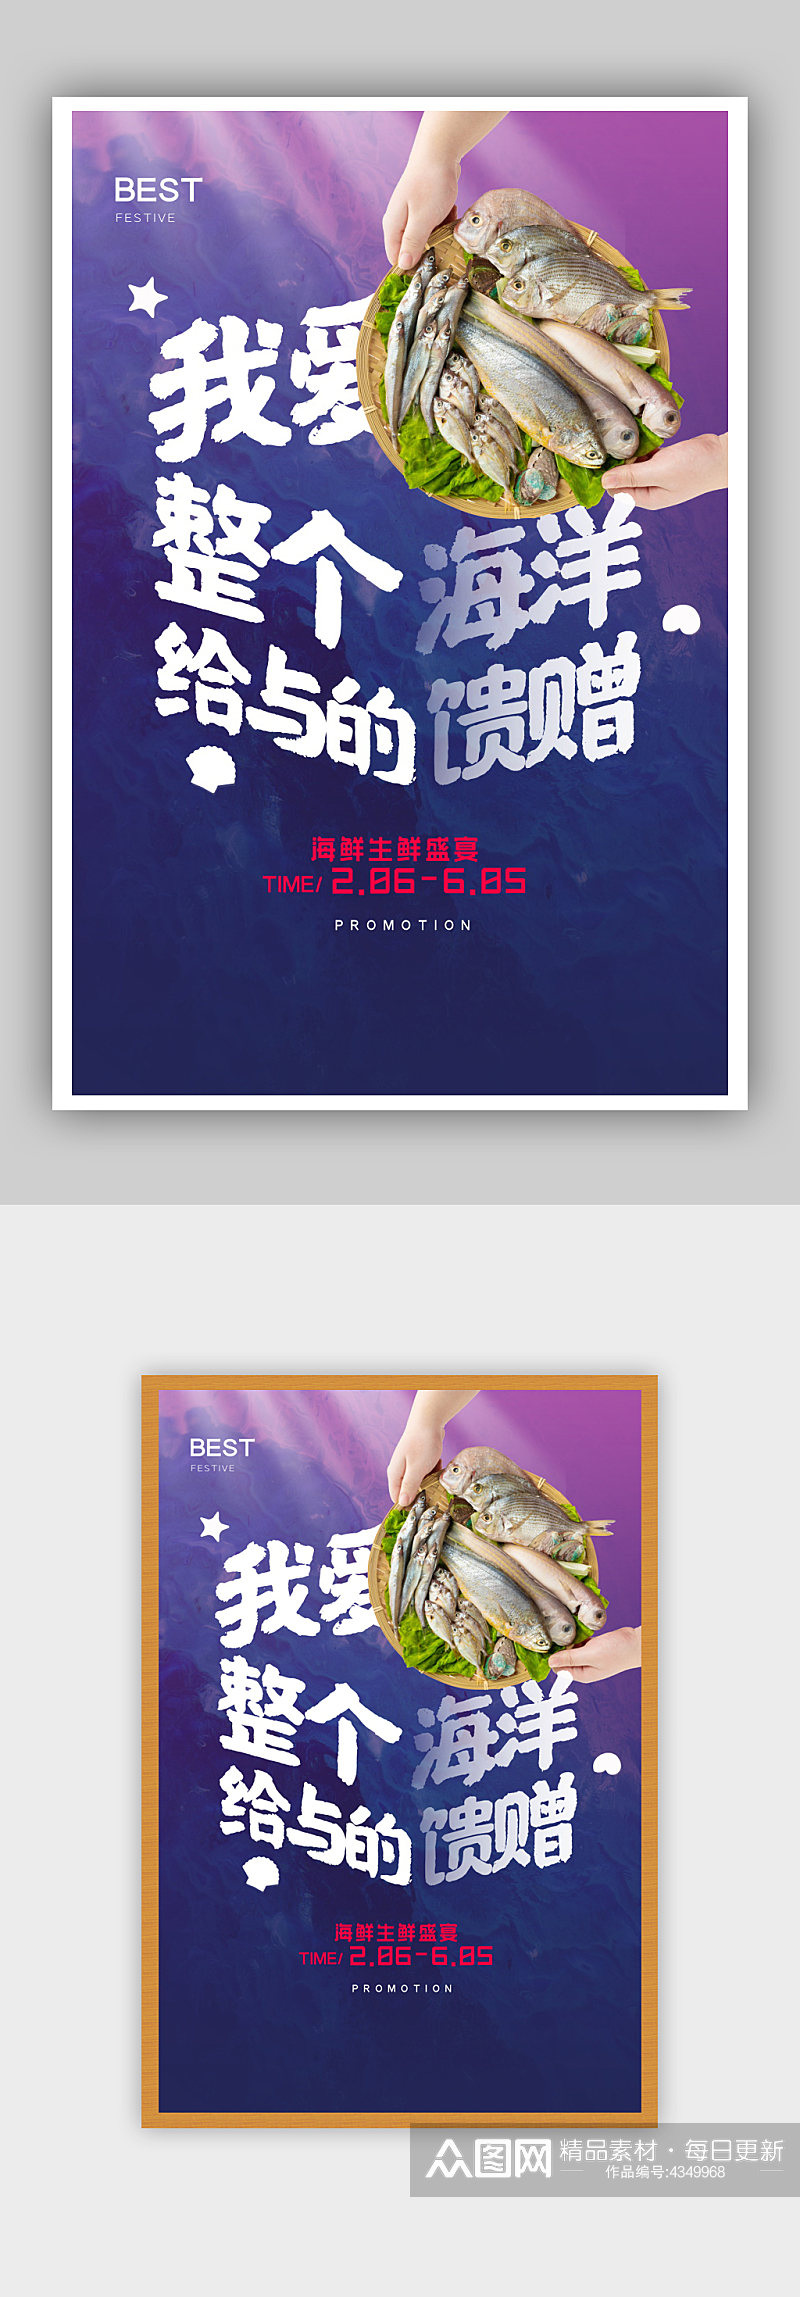 蓝紫色海鲜创意宣传海报素材